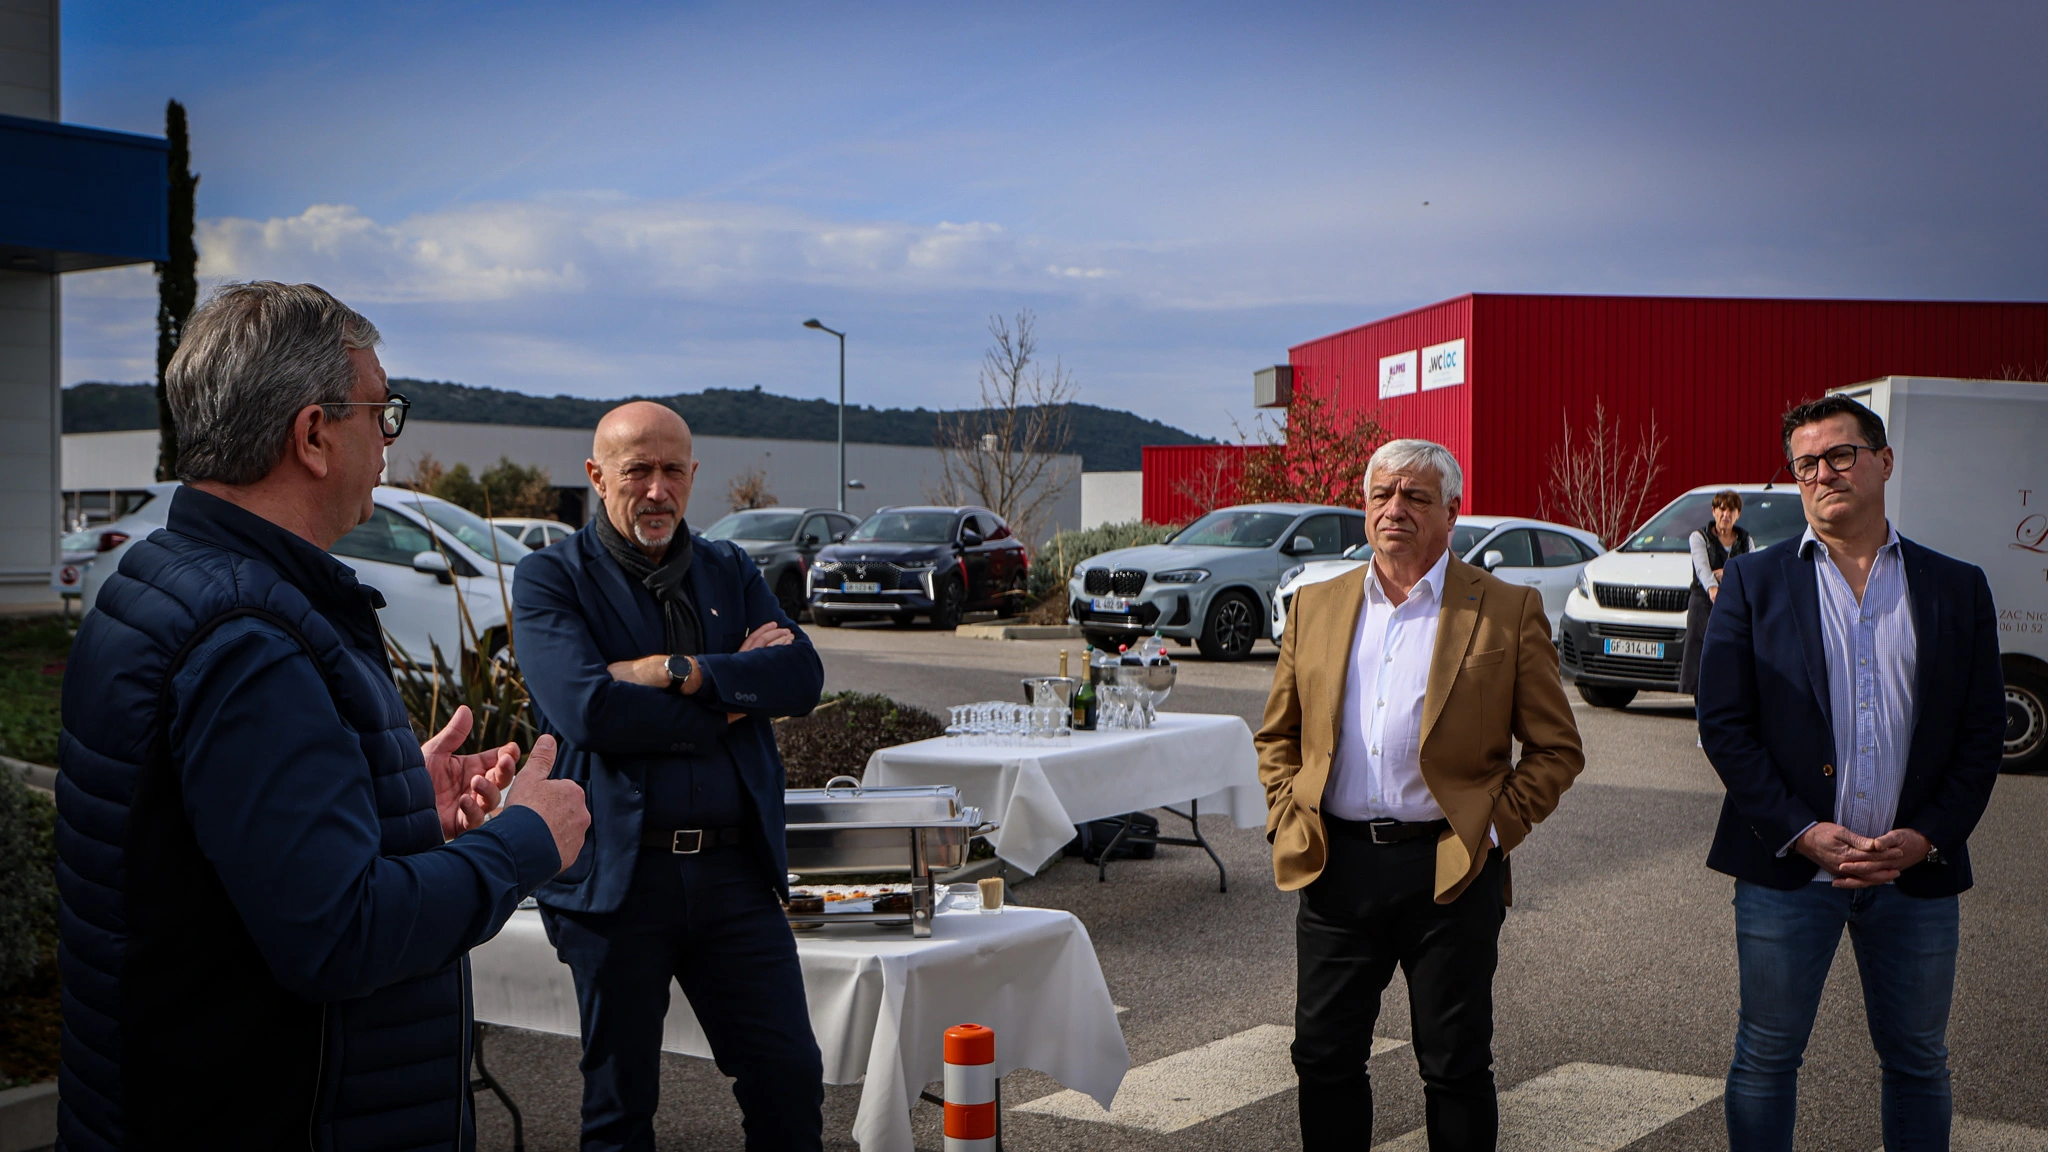 Provence Distribution Logistique réceptionne son 1er camion électrique dans le Var